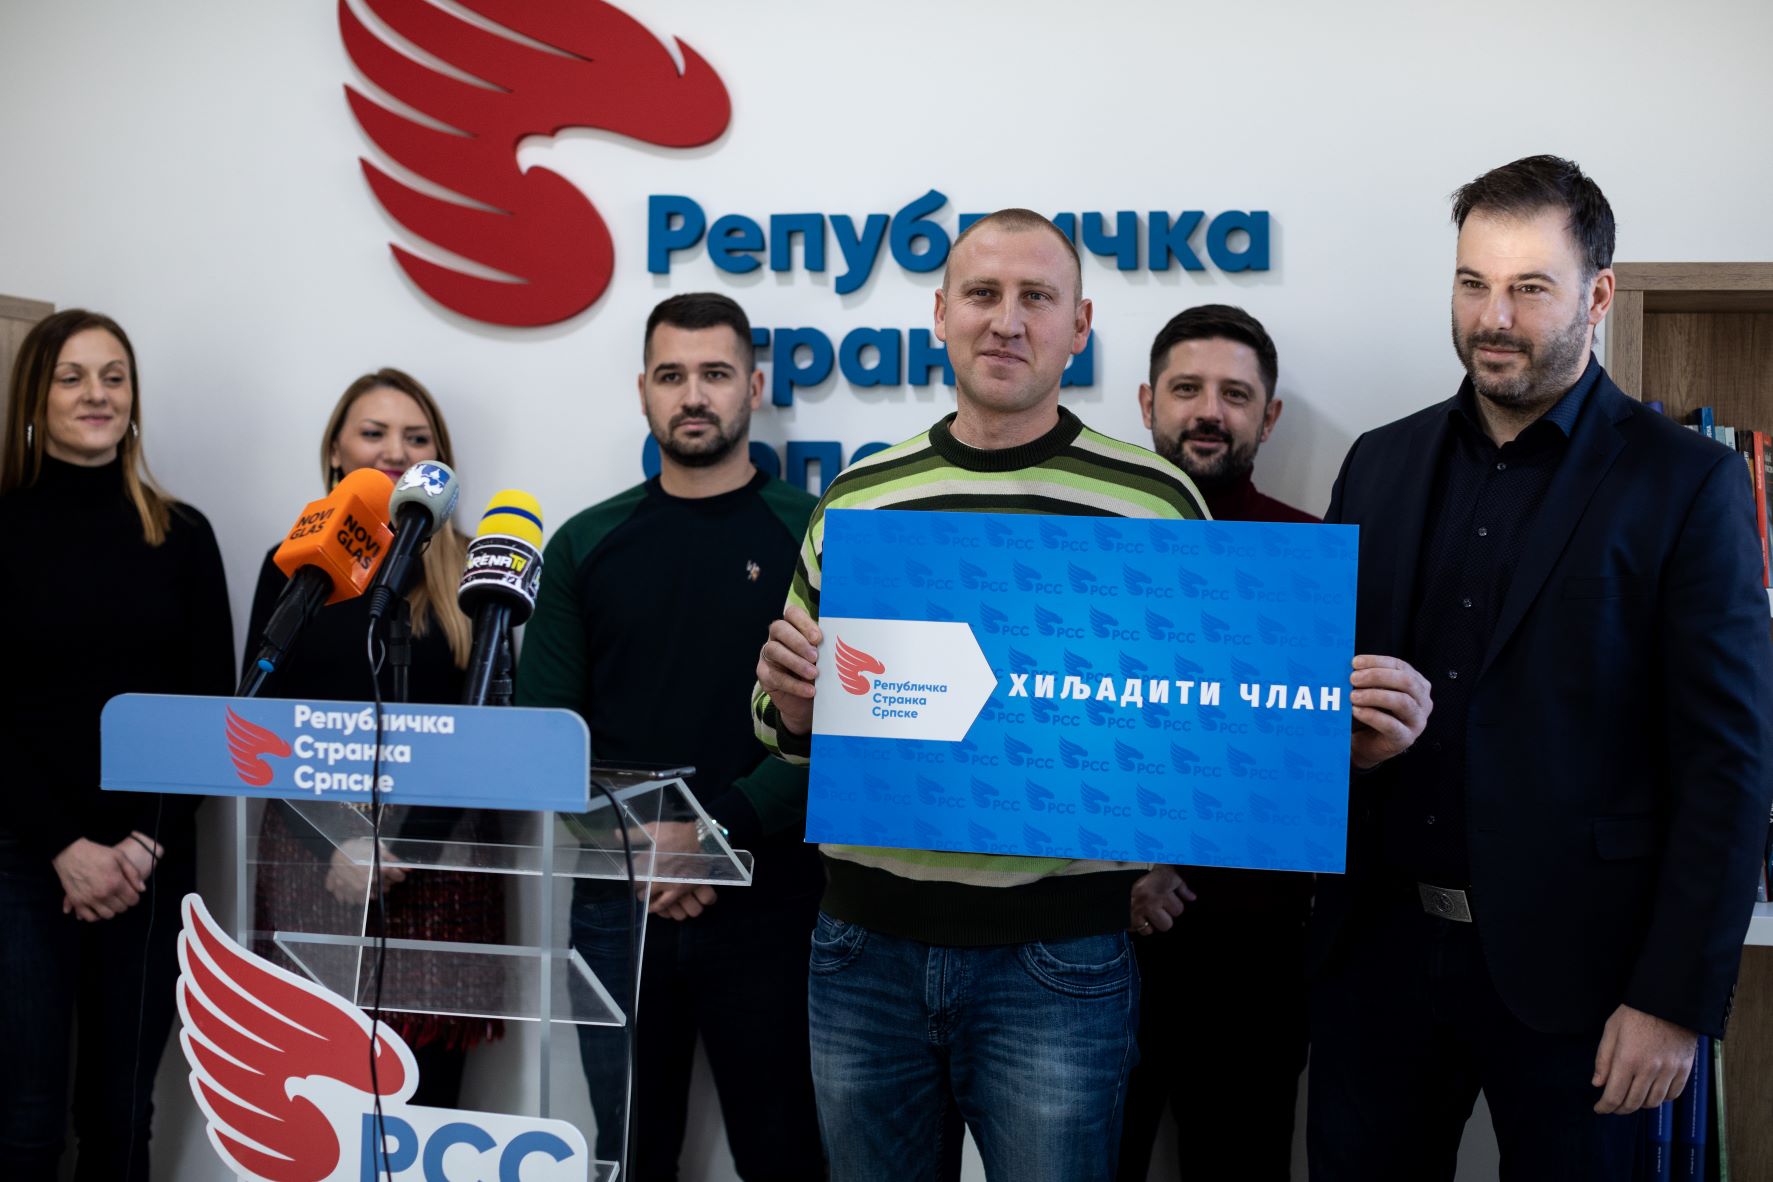 Republička stranka Srpske: Učlanjen hiljaditi član